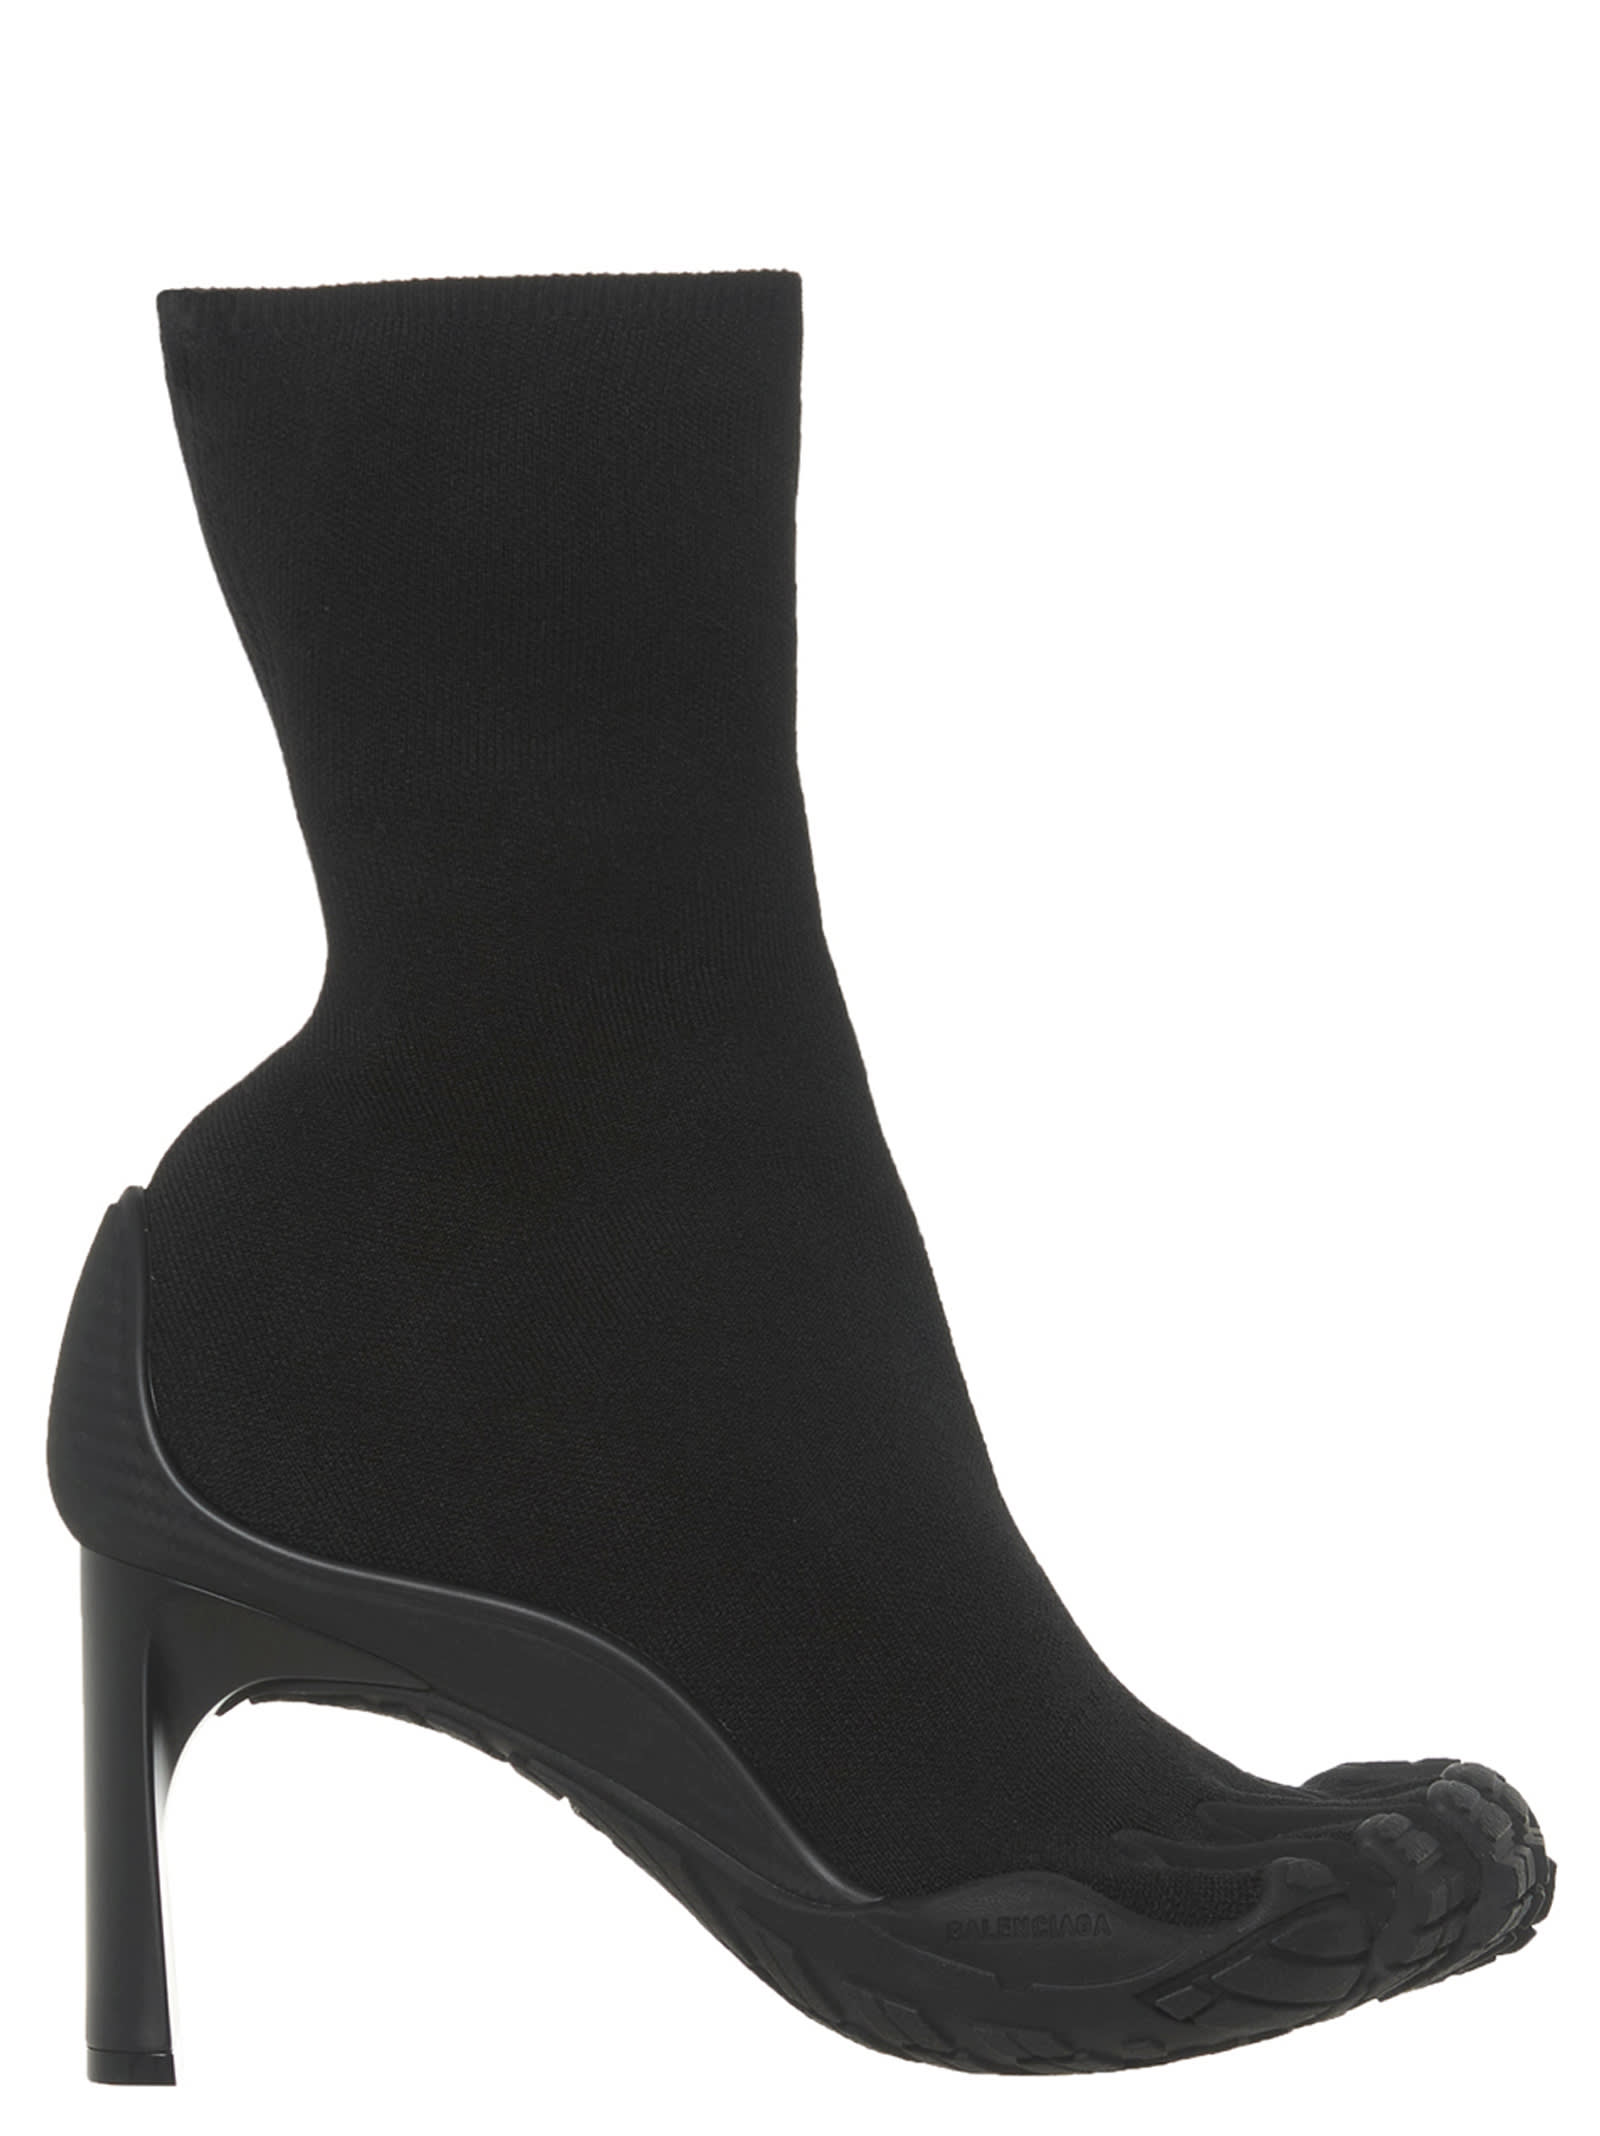 Buy Balenciaga high Toe Bootie Shoes online, shop Balenciaga shoes with free shipping